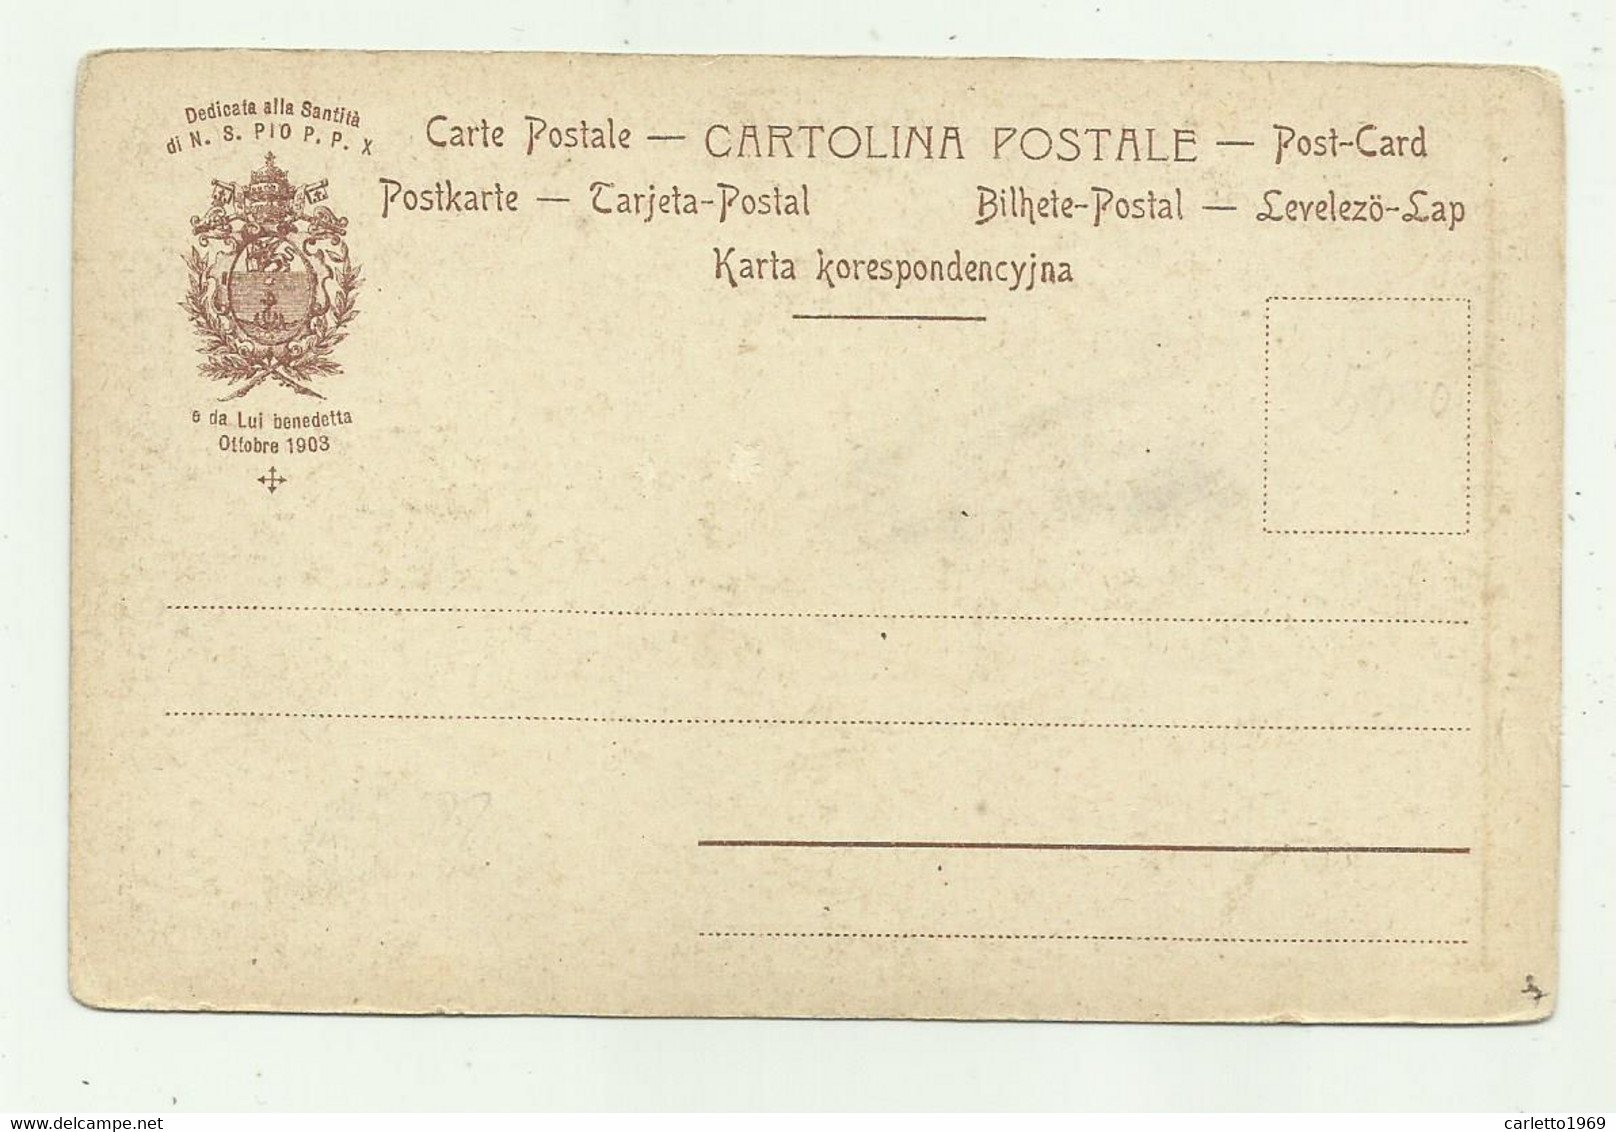 S.ELEUTERIO  MARTIRE DELL'EPIRO  - CARTOLINA DEDICATA A PIO P.P X DA LUI BENEDETTA OTTOBRE 1903 -   NV  FP - Heiligen